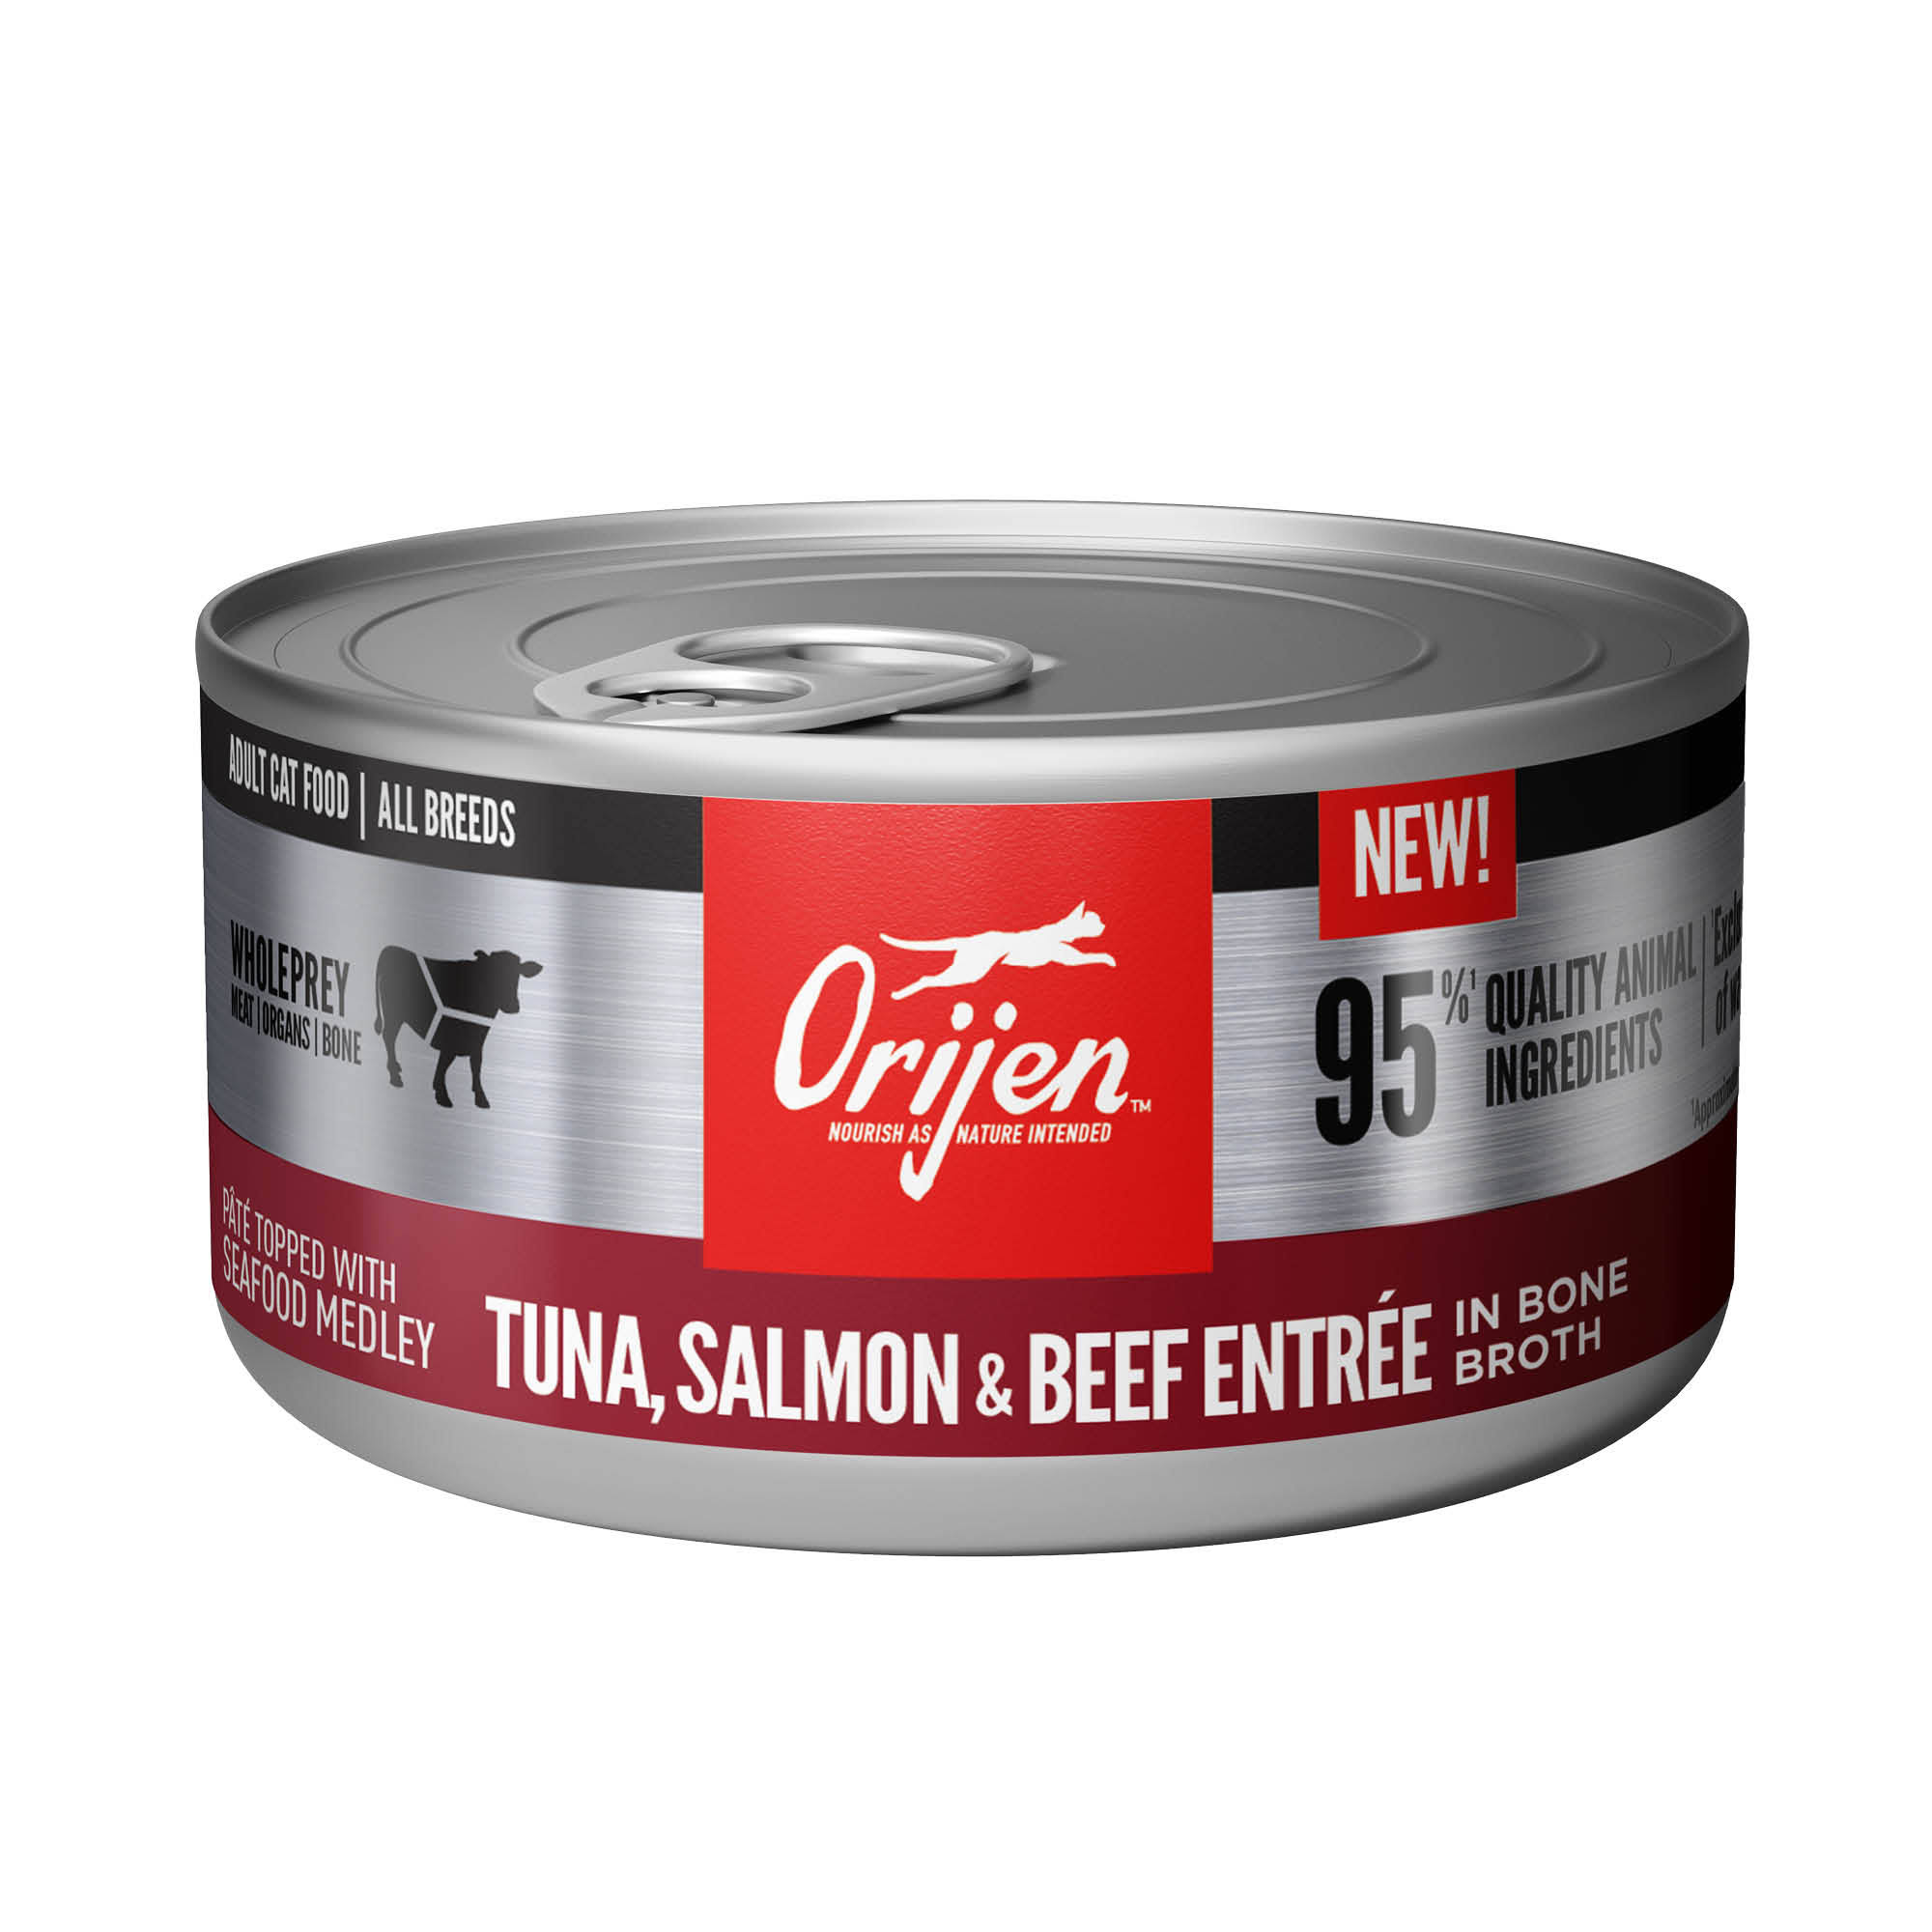 Orijen Tuna, Salmon + Beef Entree in Bone Broth Wet Cat Food, 3 oz.